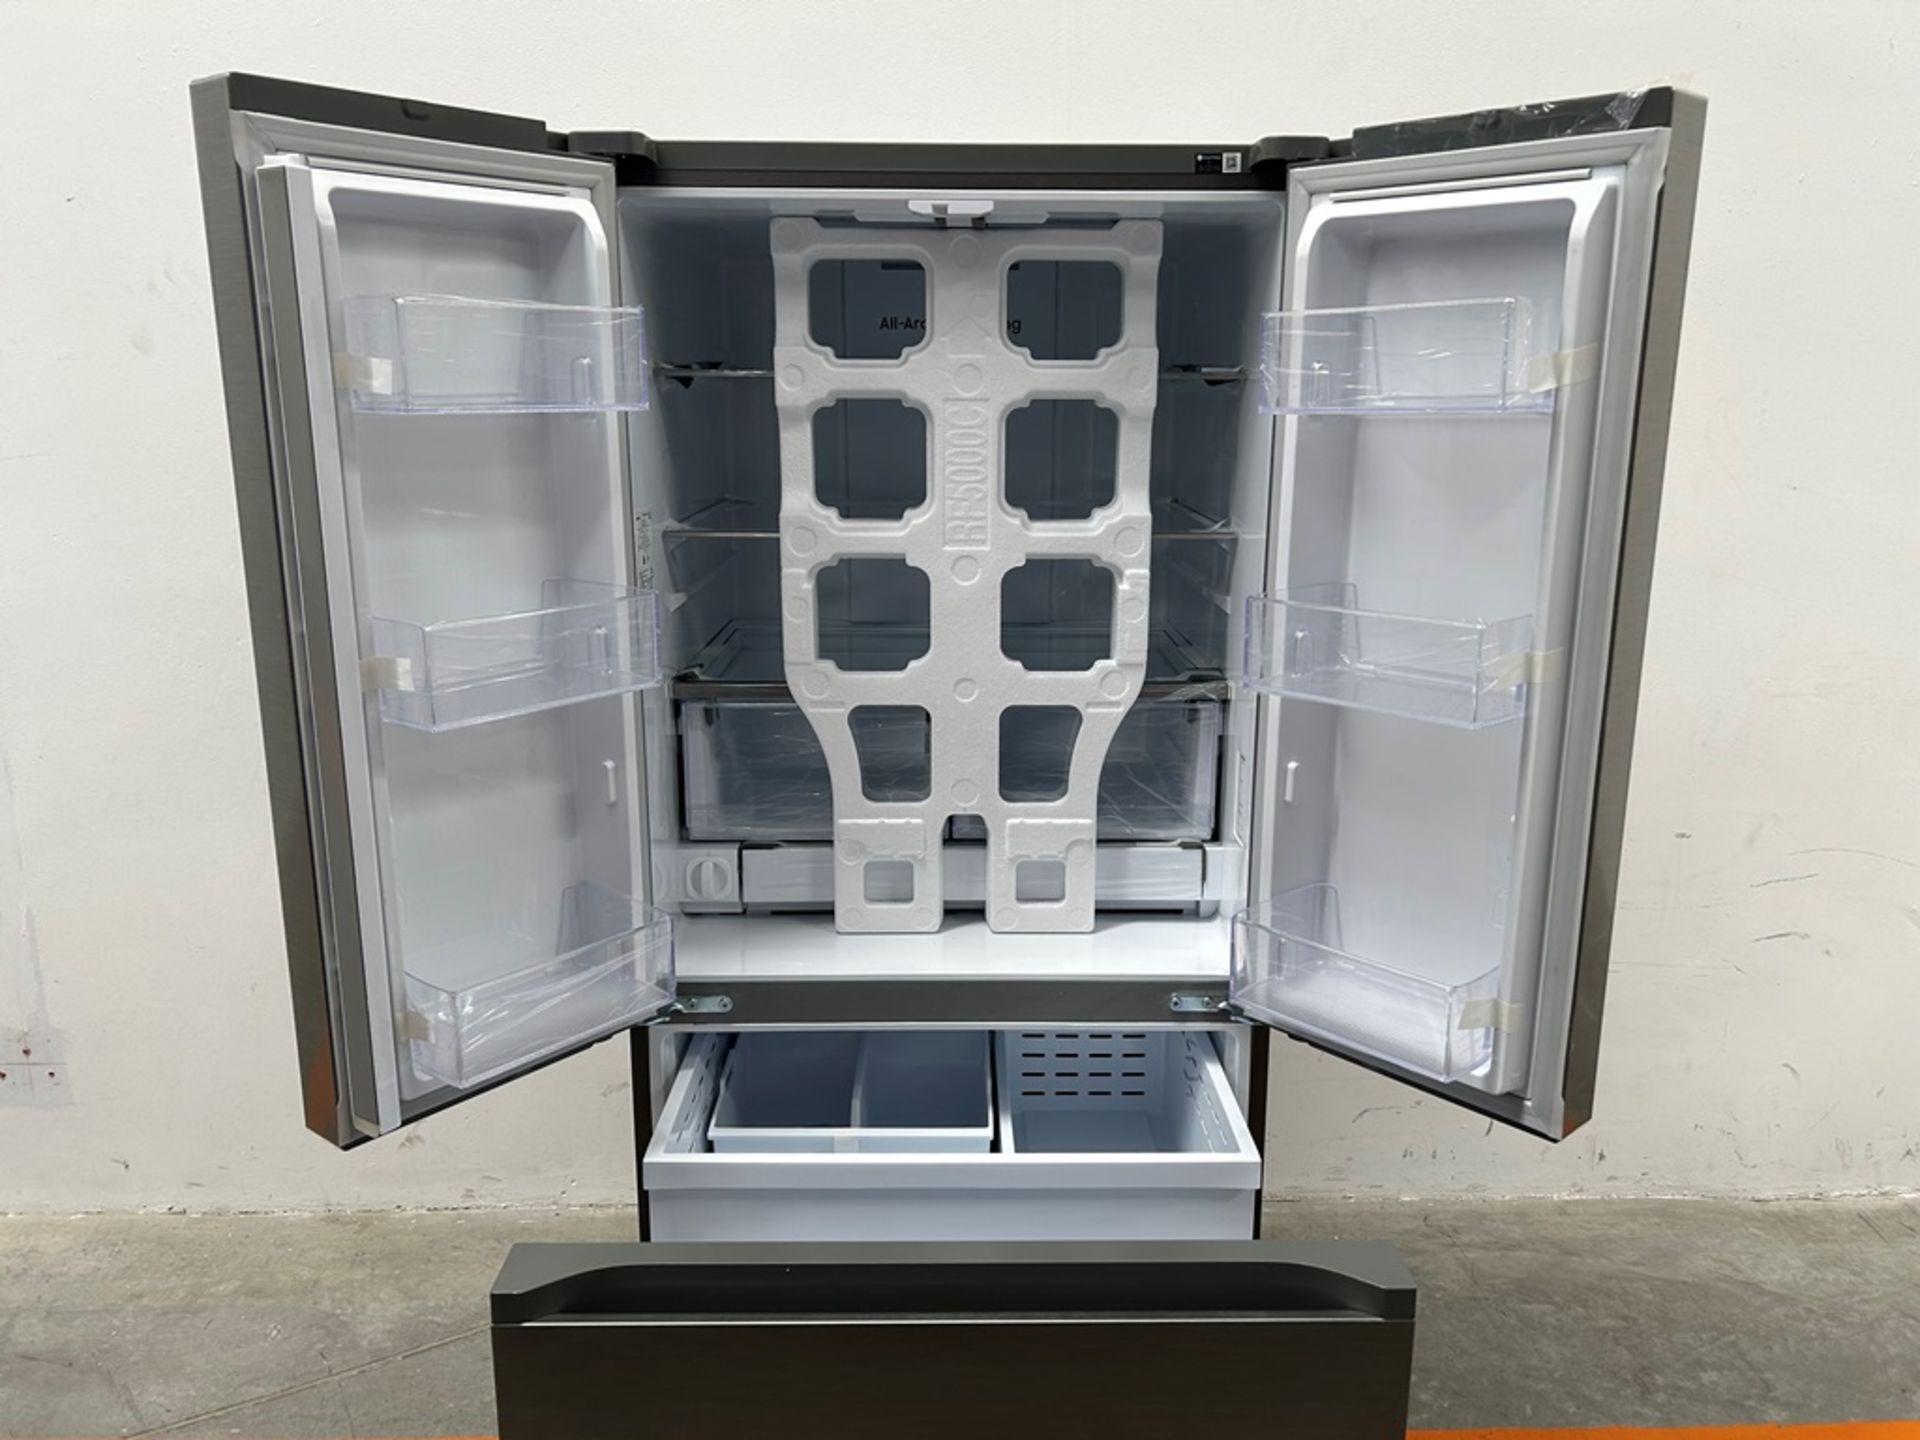 (NUEVO) Refrigerador Marca SAMSUNG, Modelo RF25C5151S9, Serie 00634V, Color GRIS - Image 4 of 11